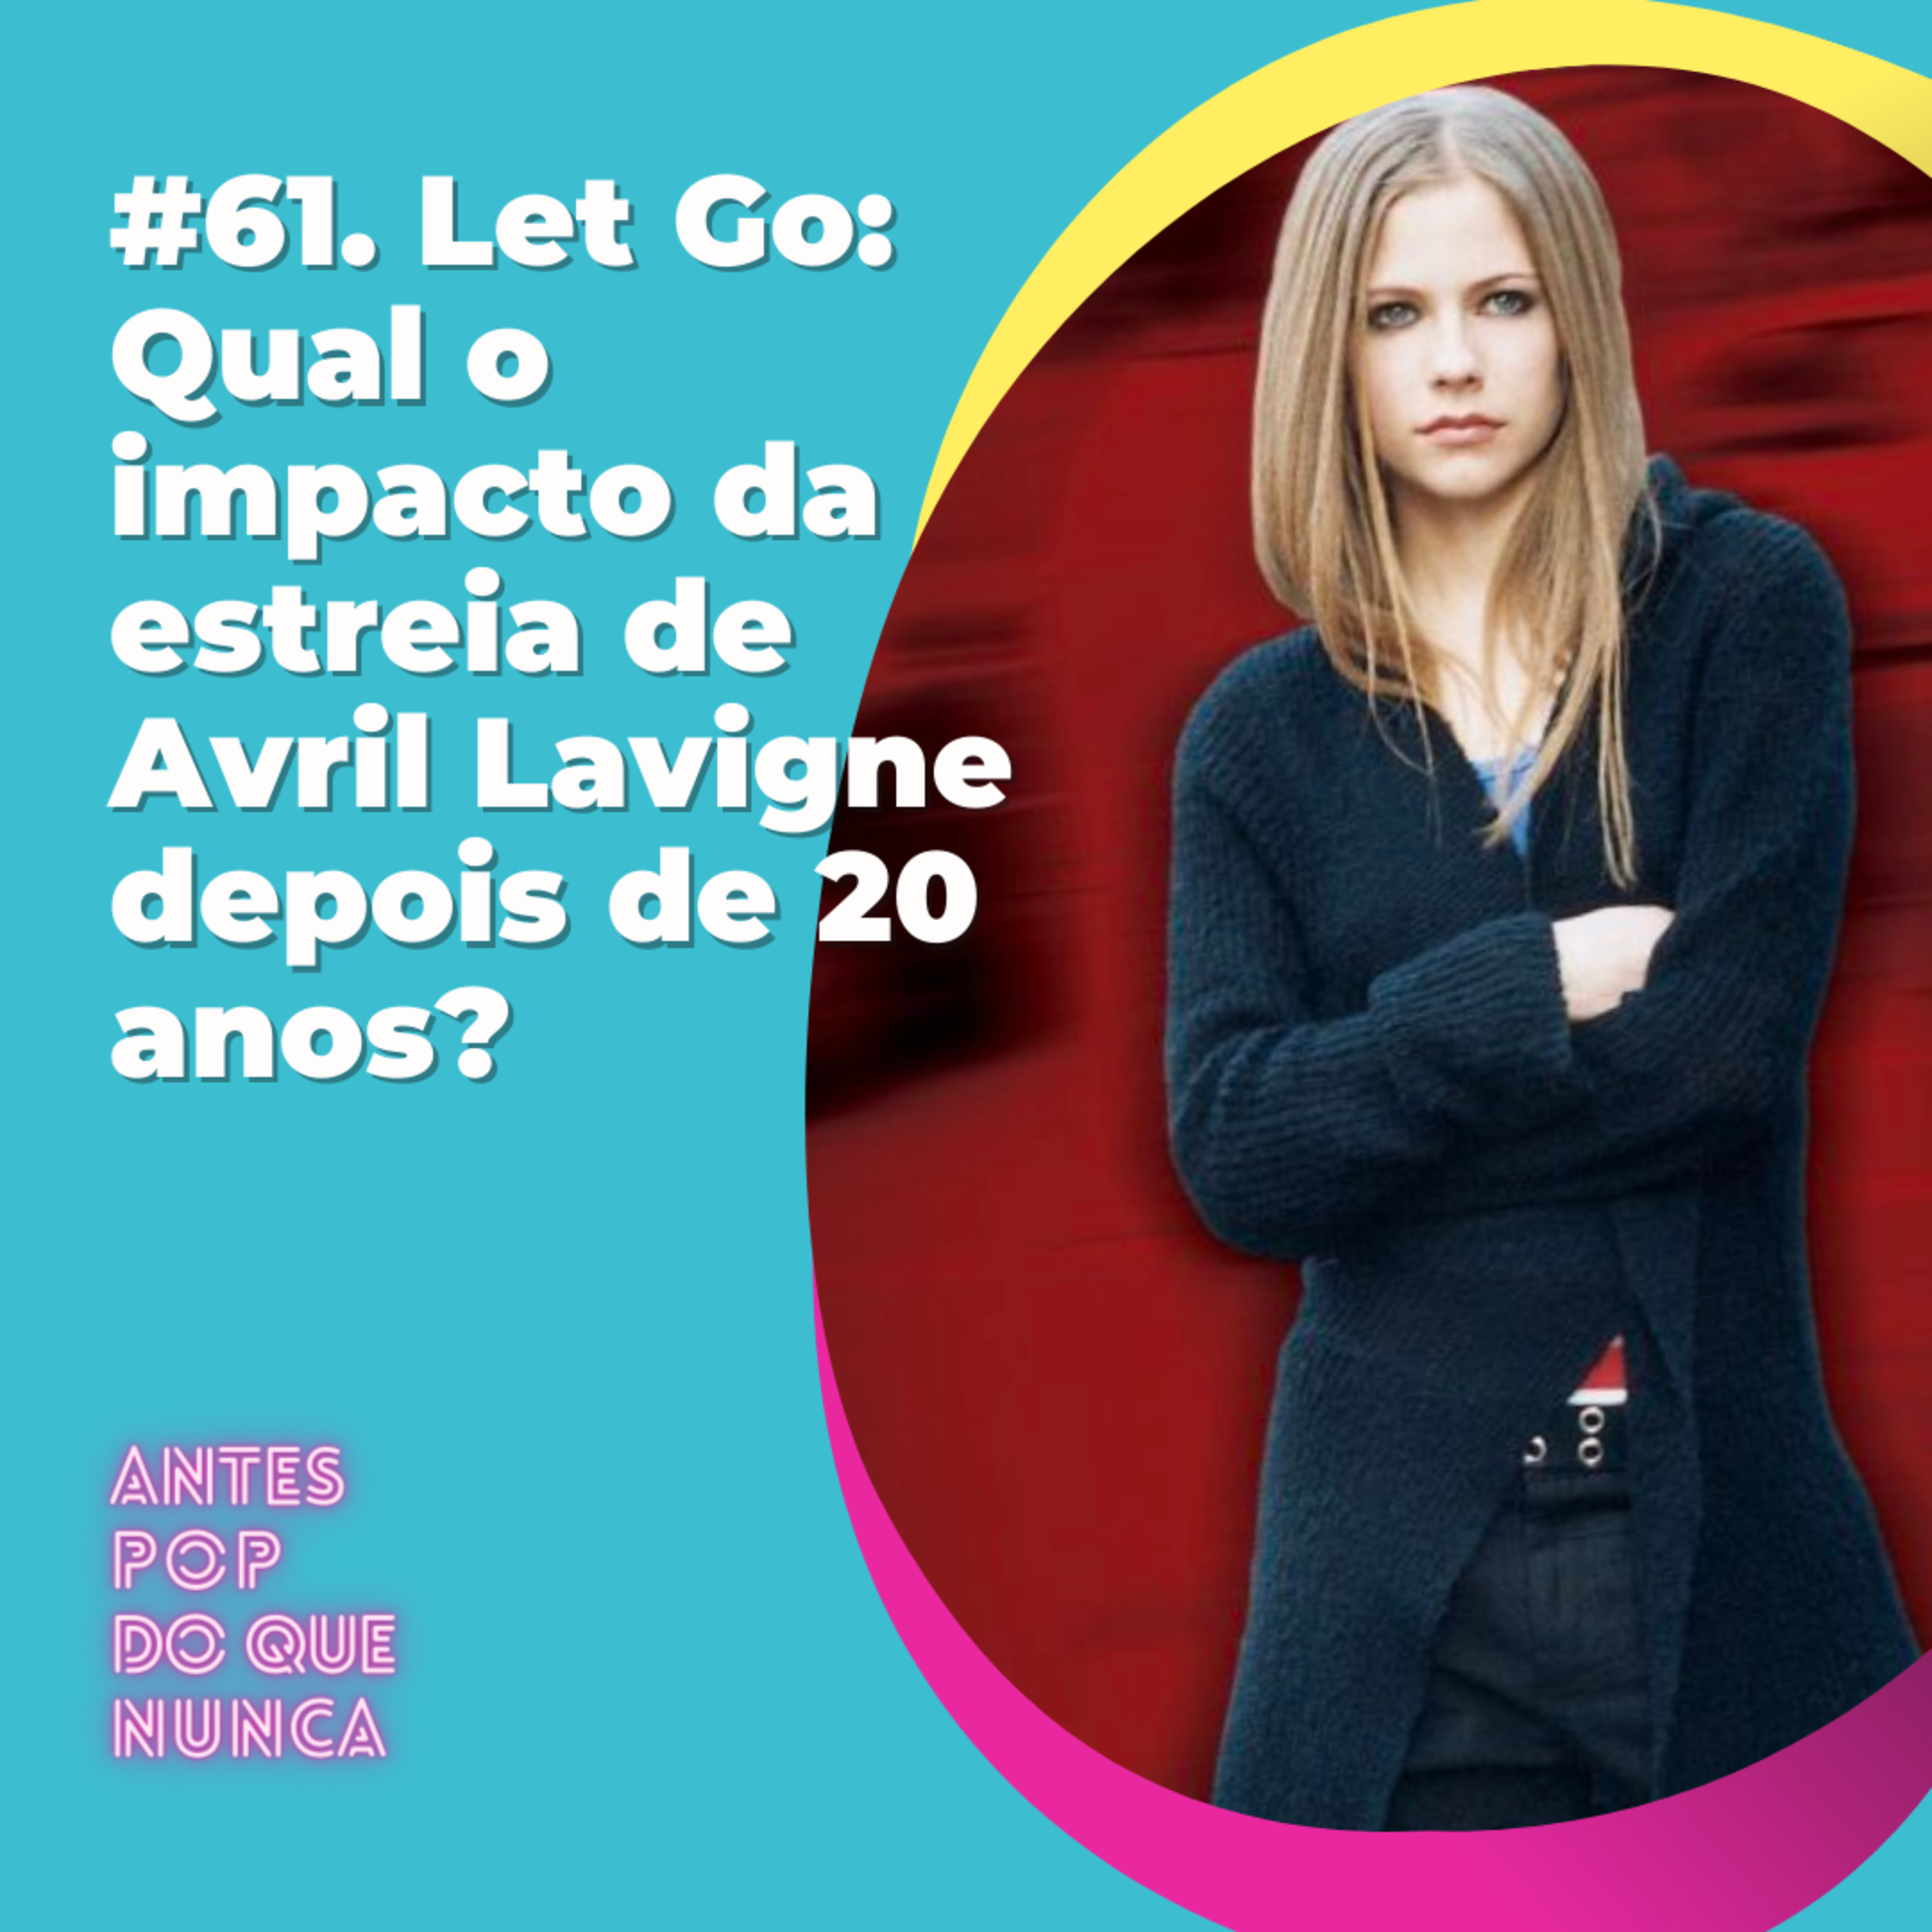 #61. Let Go: Qual o impacto da estreia de Avril Lavigne depois de 20 anos?